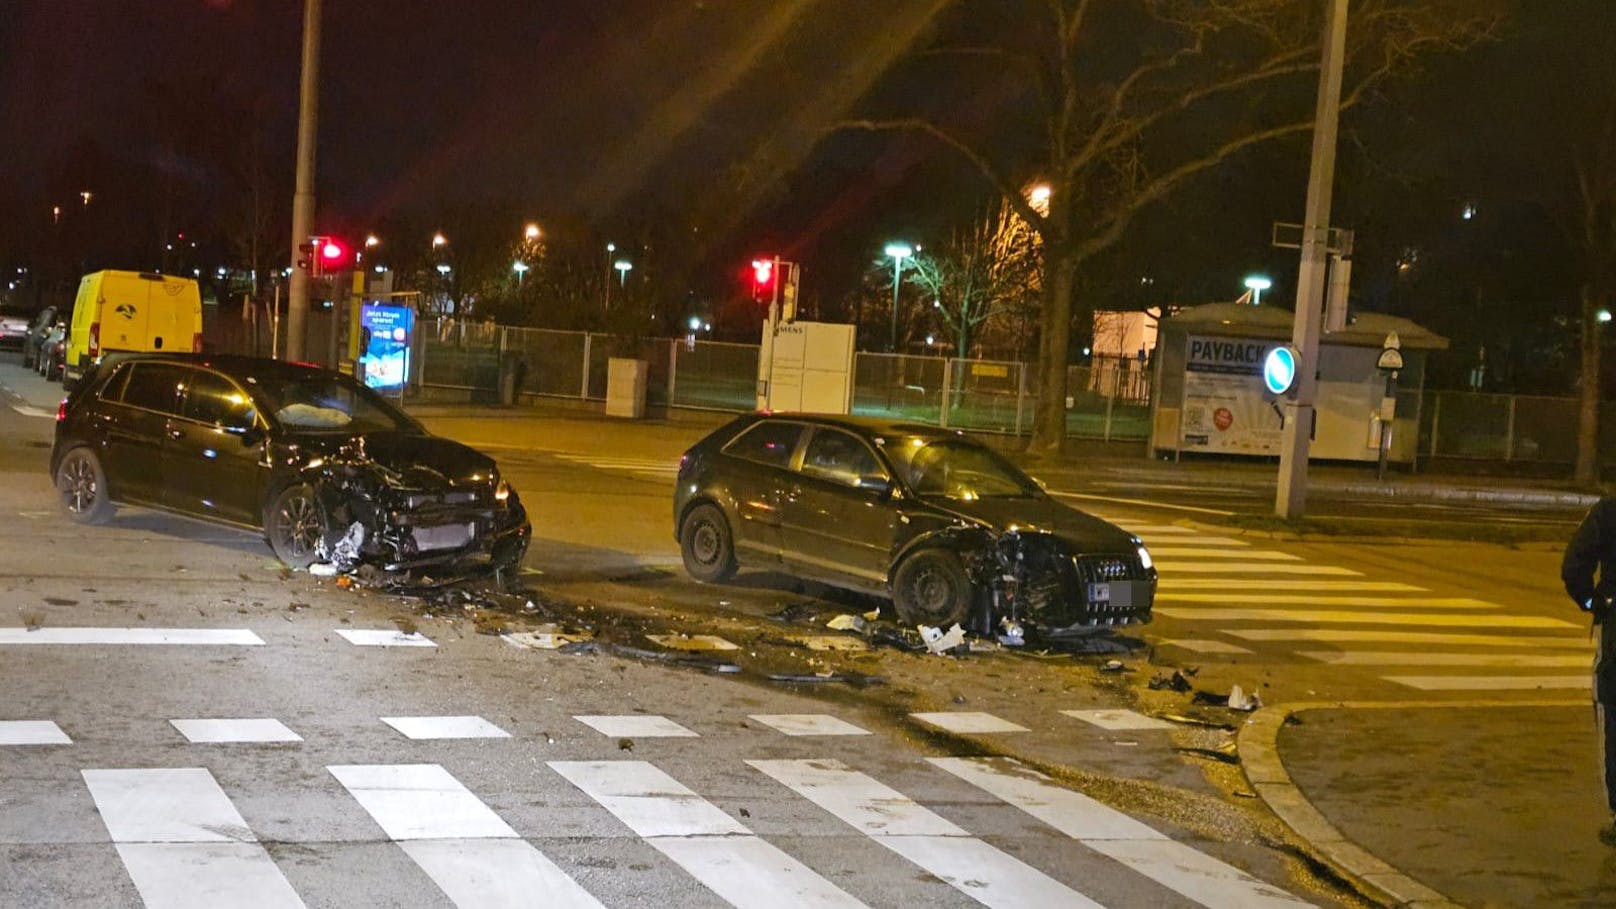 Heftiger Crash in Wien – Mann verweigert Blut-Test